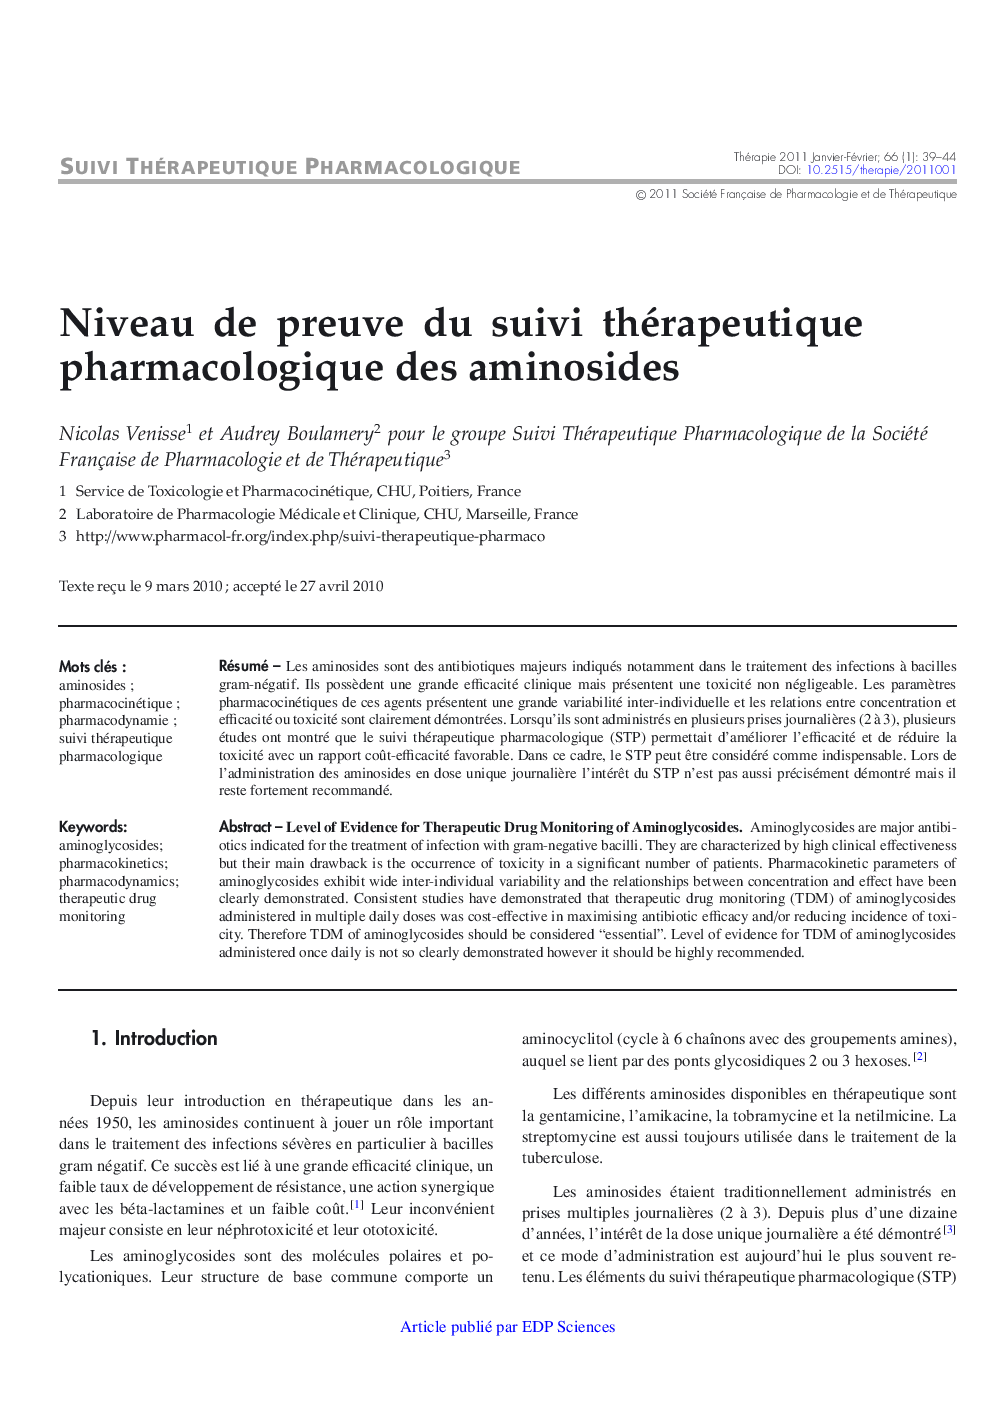 Niveau de preuve du suivi thérapeutique pharmacologique des aminosides